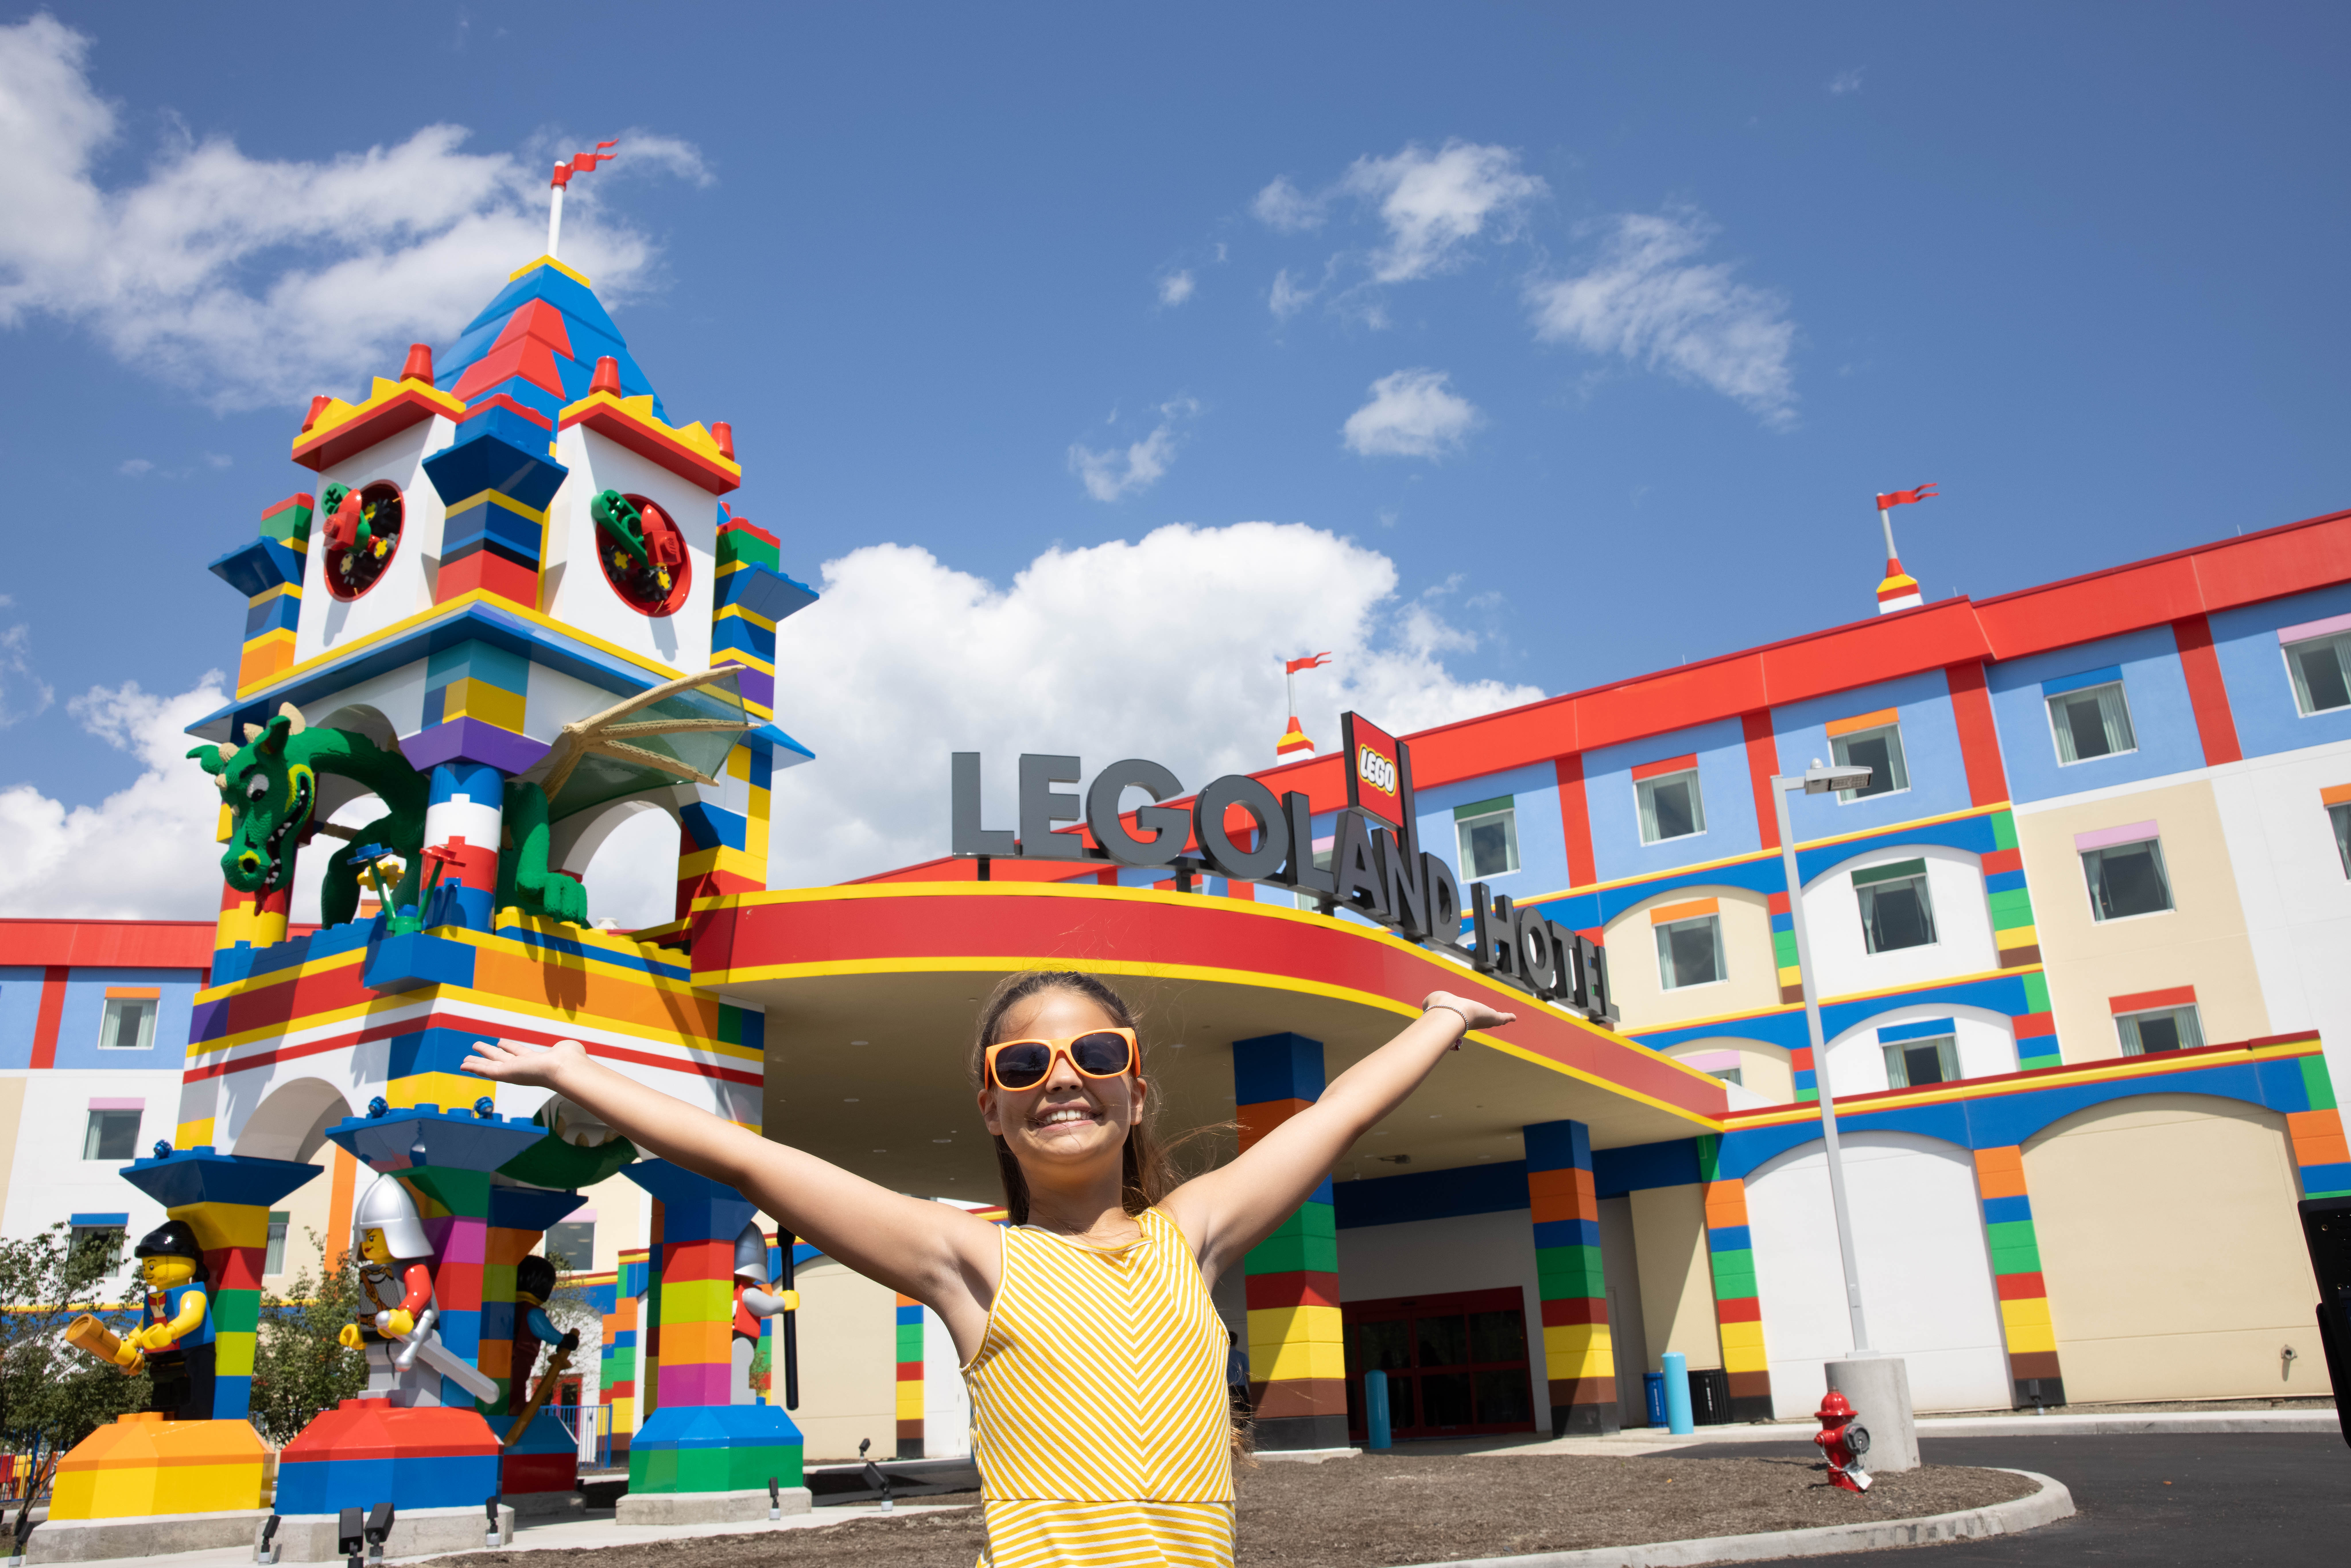 Near legoland hotel Legoland Hotel